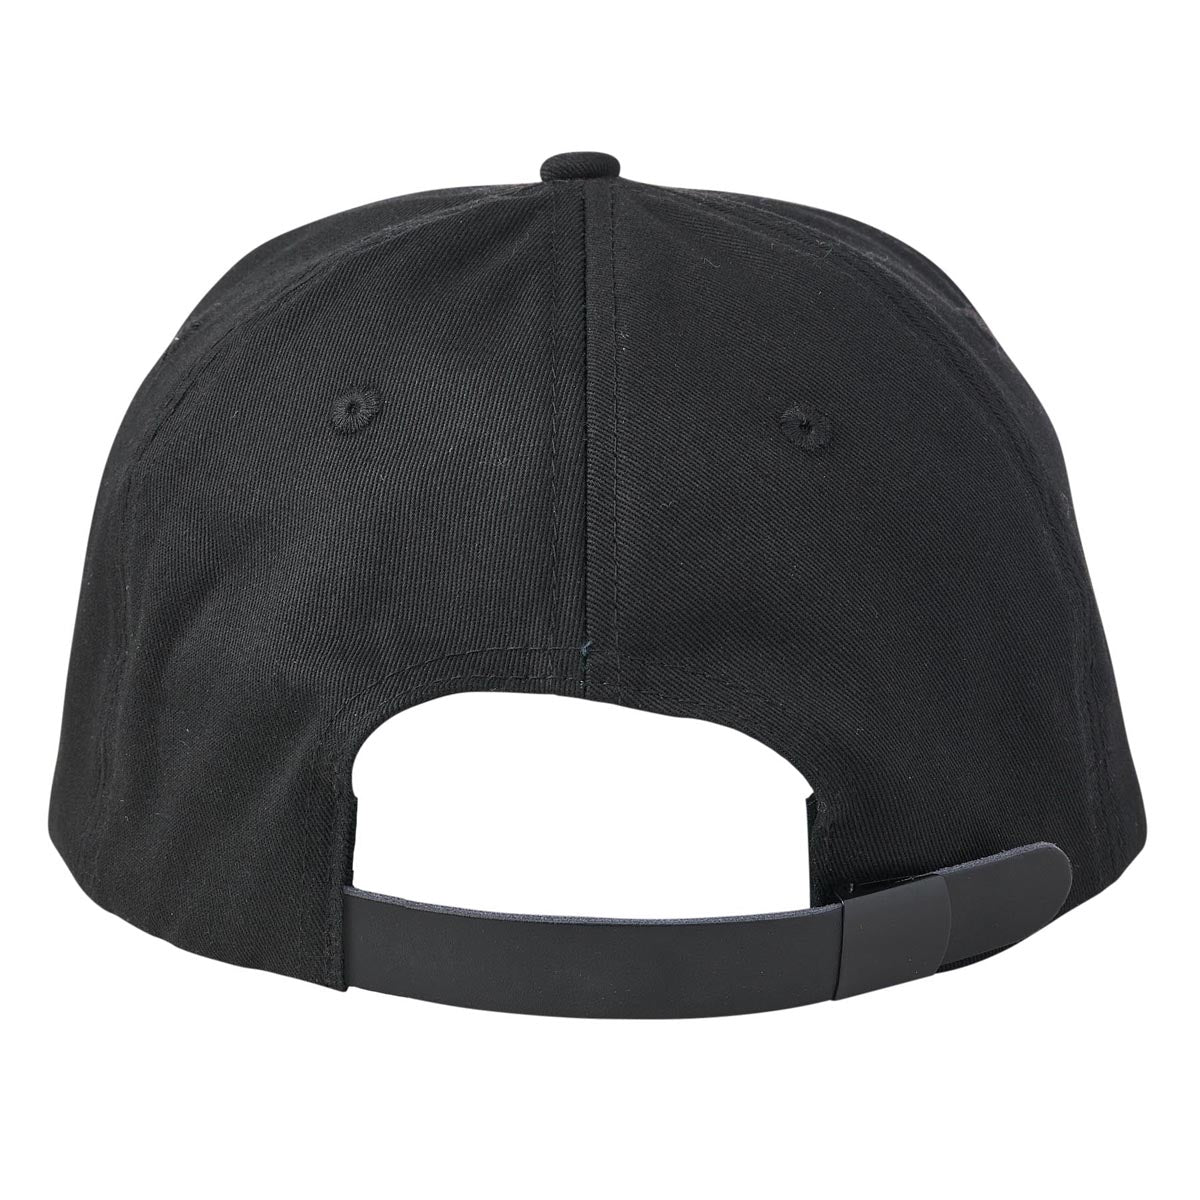 Santa Cruz Collegiate Strapback Hat - Eco Black image 3